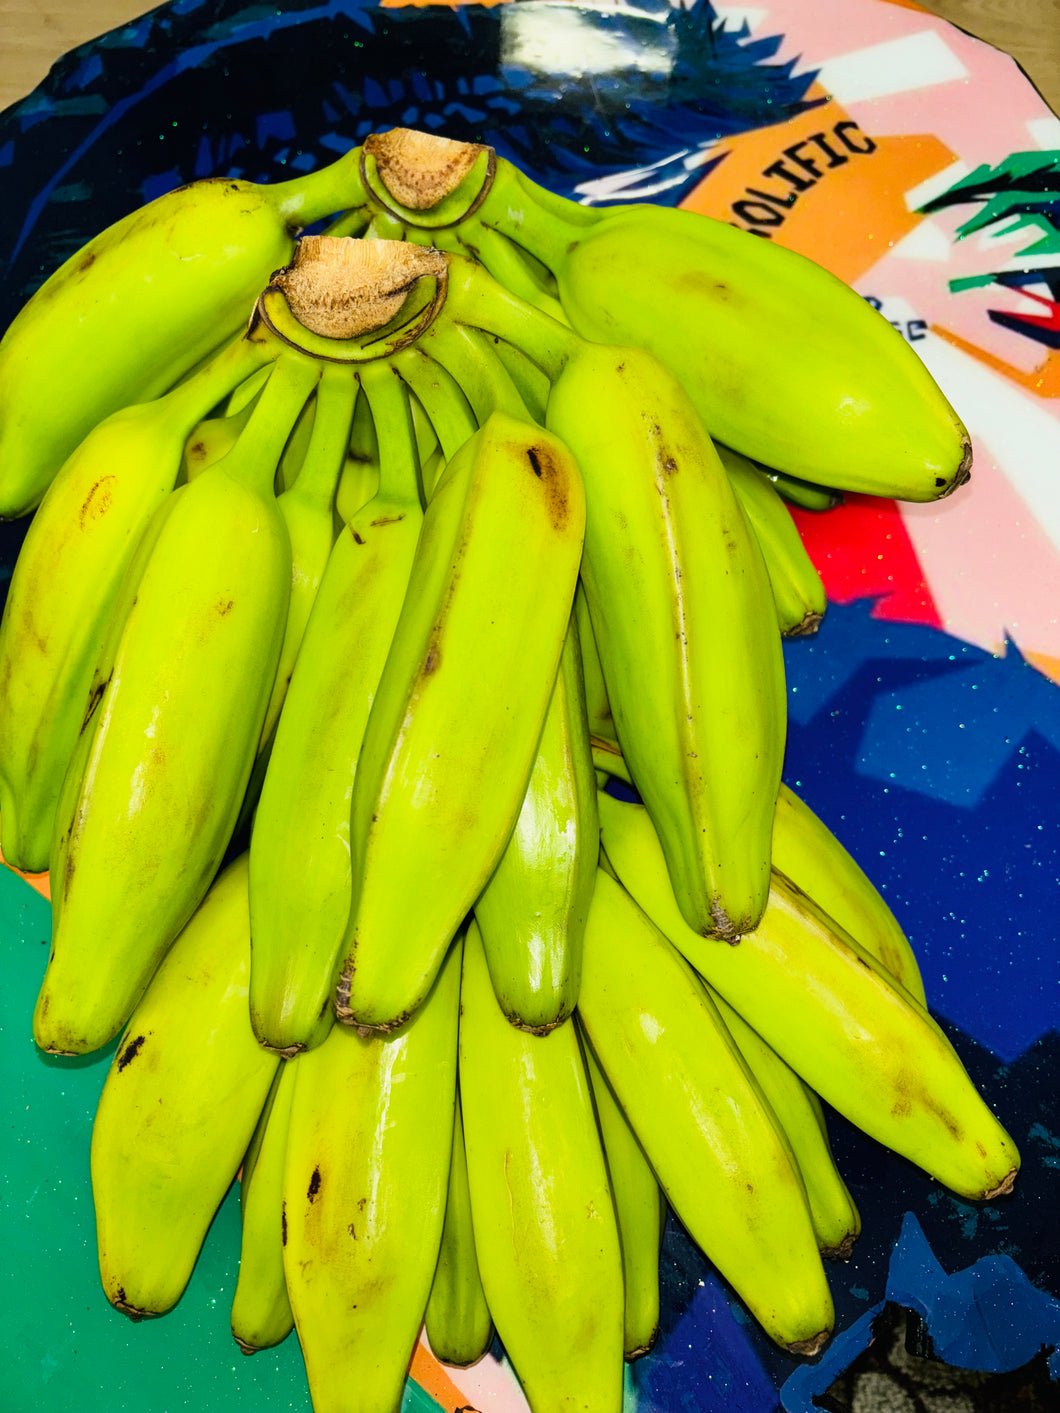 Burro Banana - Orinoco blogo banana